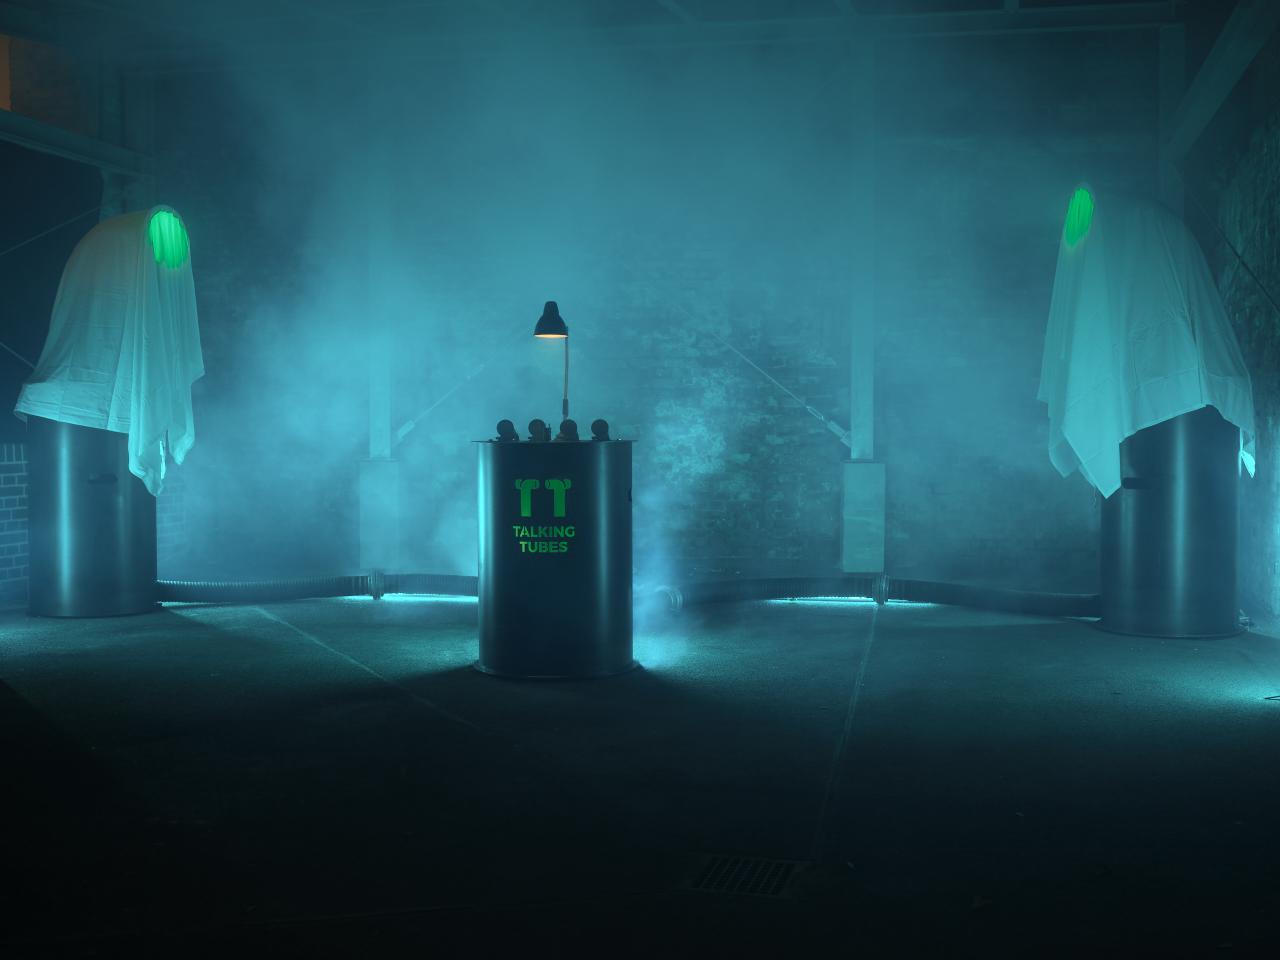 Ein blau erleuchteter und nebelgefüllter Raum mit der Talking-Tubes-Installation: ein Steuerungspult zwischen zwei großen Röhren, die mit weißen Tüchern bedeckt sind